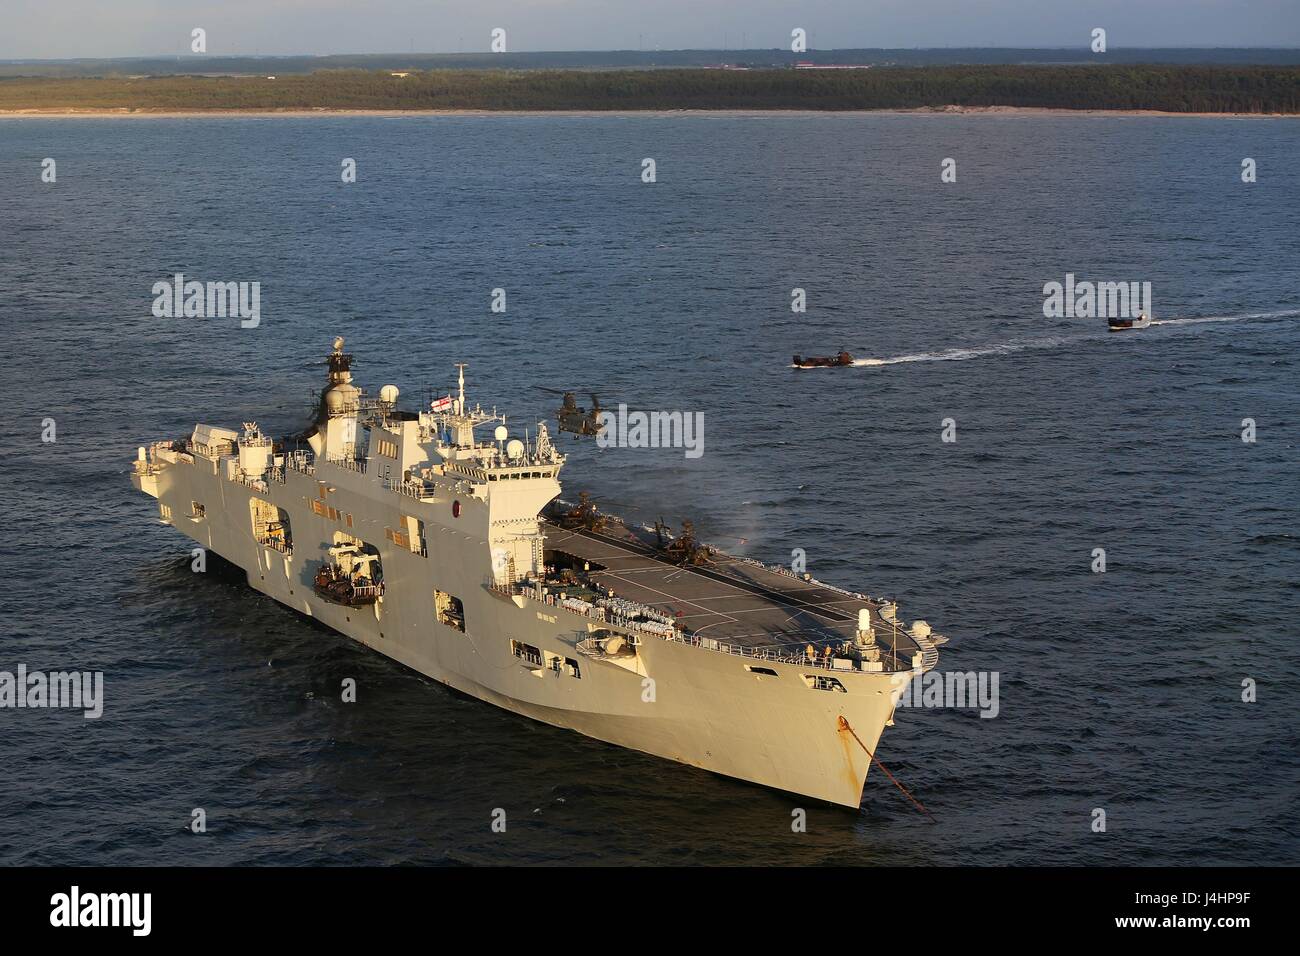 La British Royal Navy Ocean-classe de débarquement amphibie HMS Ocean cuit en cours pendant l'exercice BALTOPS 16 juin 2015 au large des côtes de la Pologne. (Photo de Sarah E. Burns/Marines américains via Planetpix) Banque D'Images